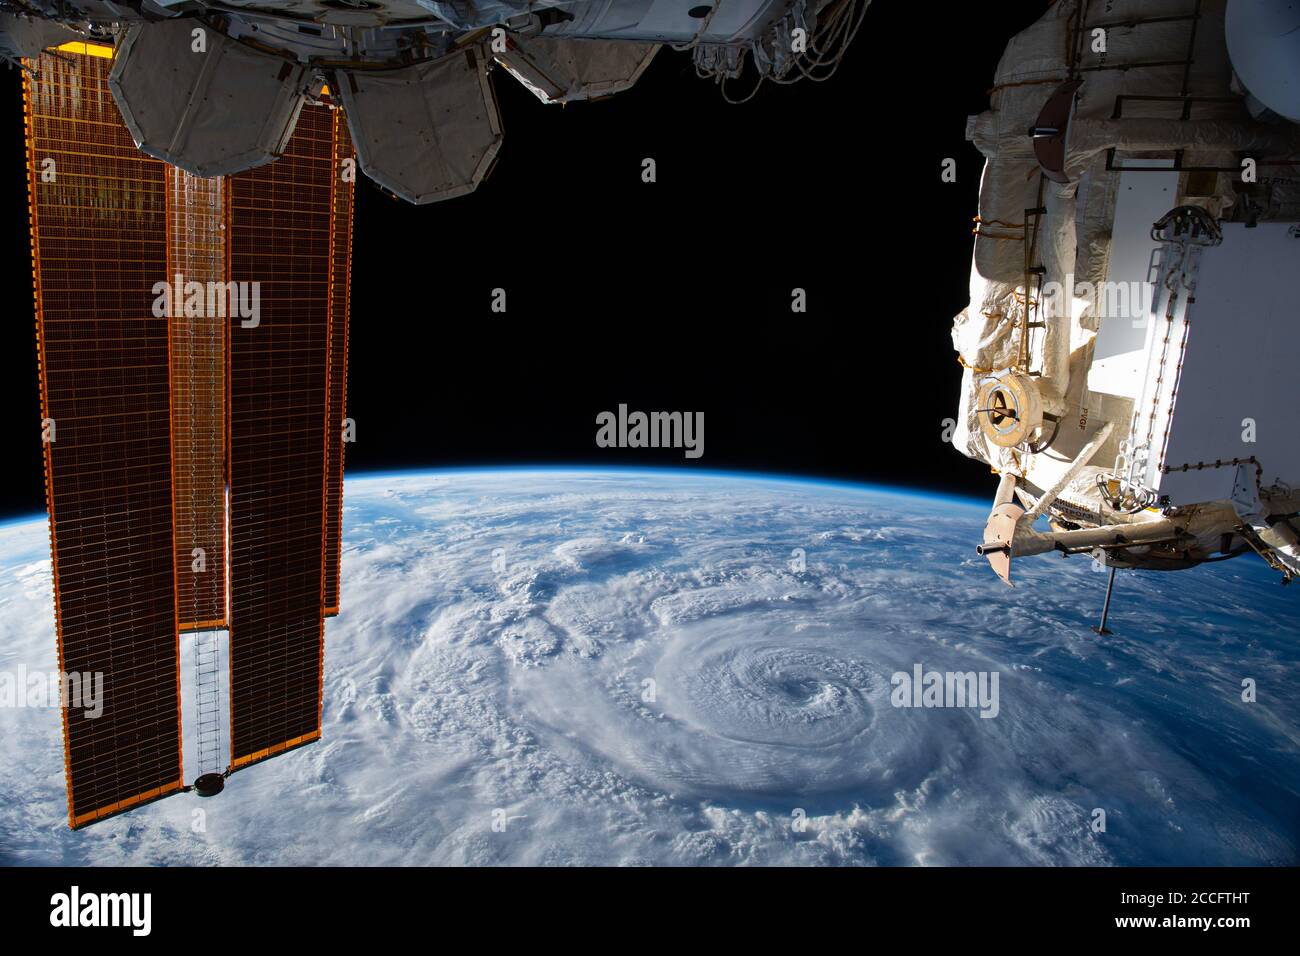 ISS - 19. August 2020 - Hurrikan Genevieve wird von der Internationalen Raumstation aus vor der Pazifikküste Mexikos fotografiert - Foto: Geopix/NASA/Alamy Stockfoto